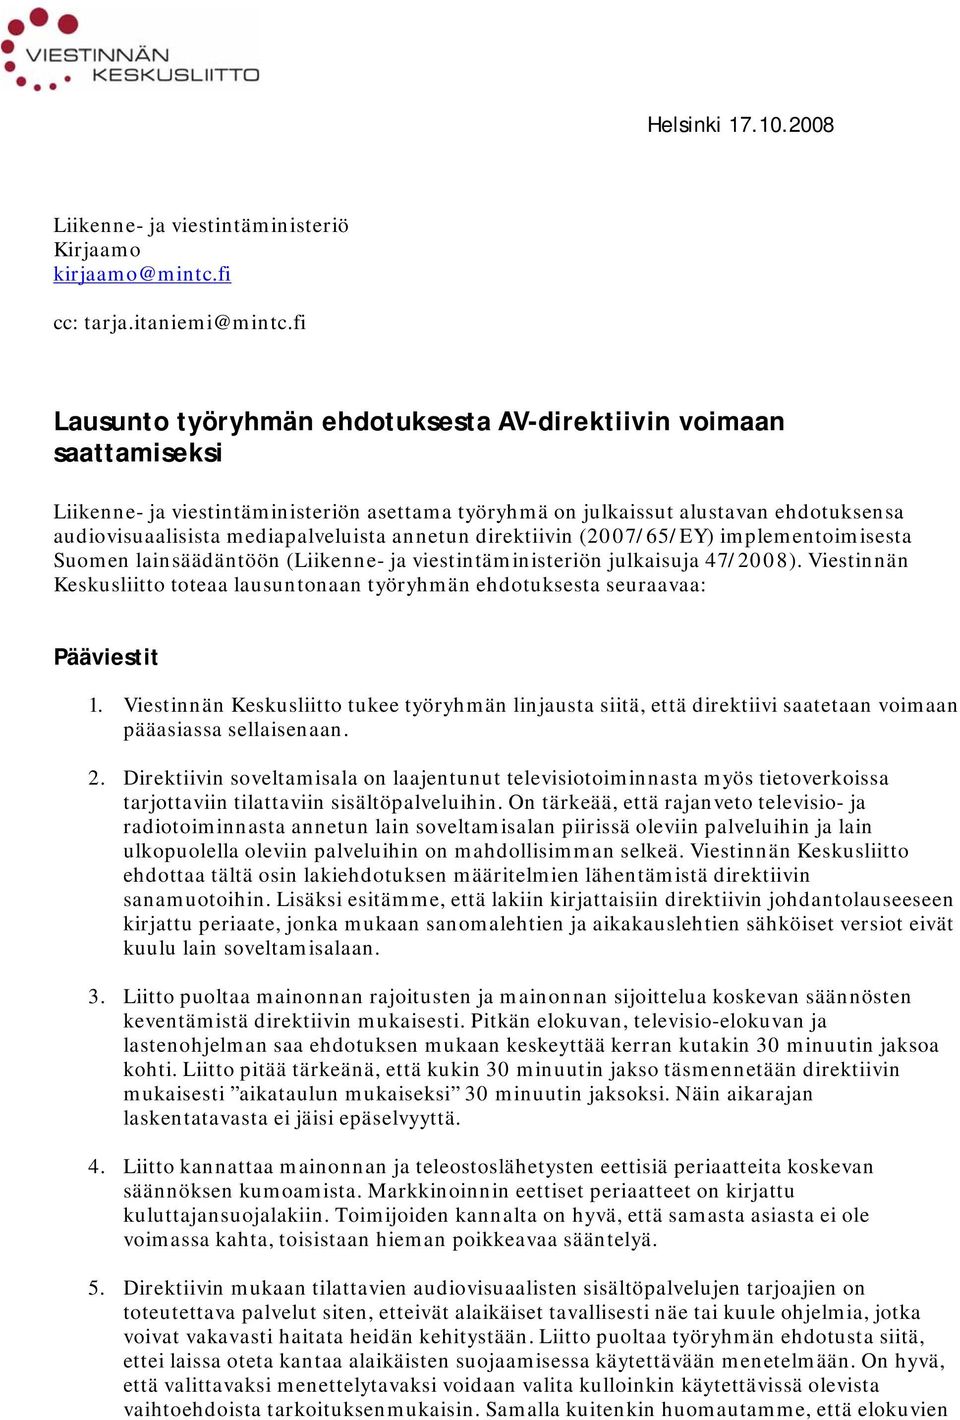 annetun direktiivin (2007/65/EY) implementoimisesta Suomen lainsäädäntöön (Liikenne- ja viestintäministeriön julkaisuja 47/2008).